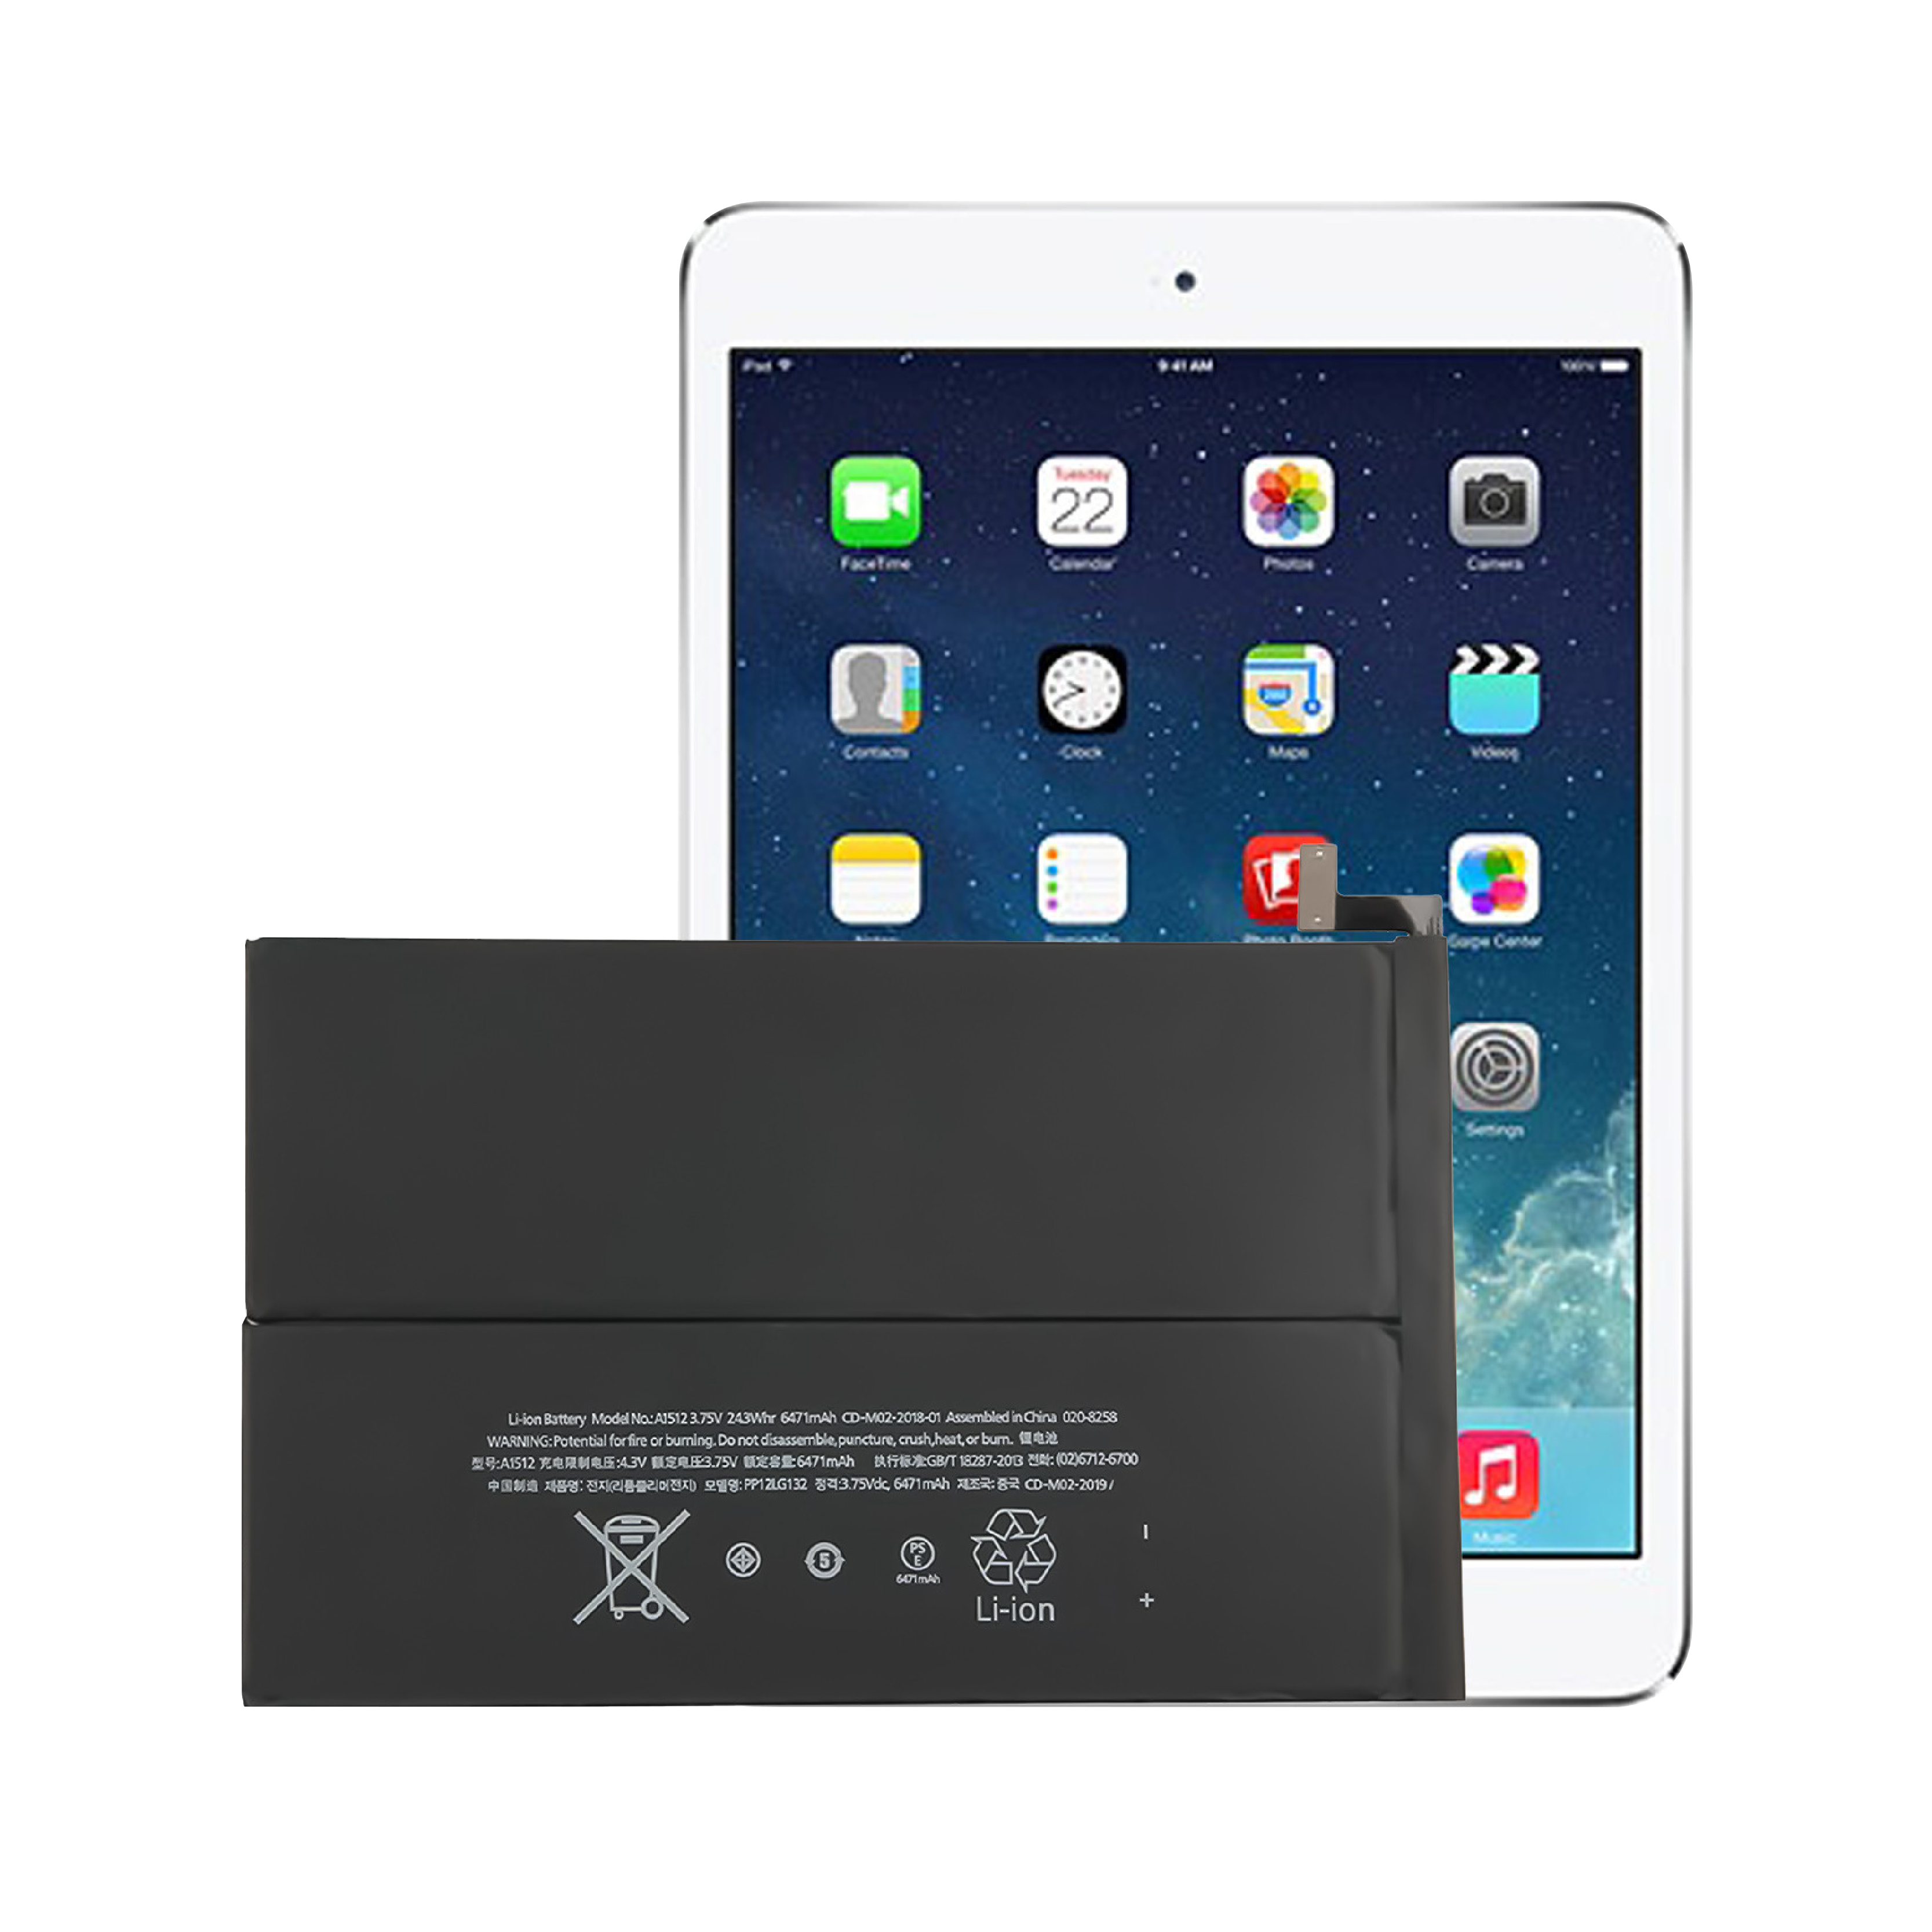 Héich Qualitéit OEM Brand New 0 Zyklus Intern Tablet Batterie Fir Apple iPad mini2/3 Batterie